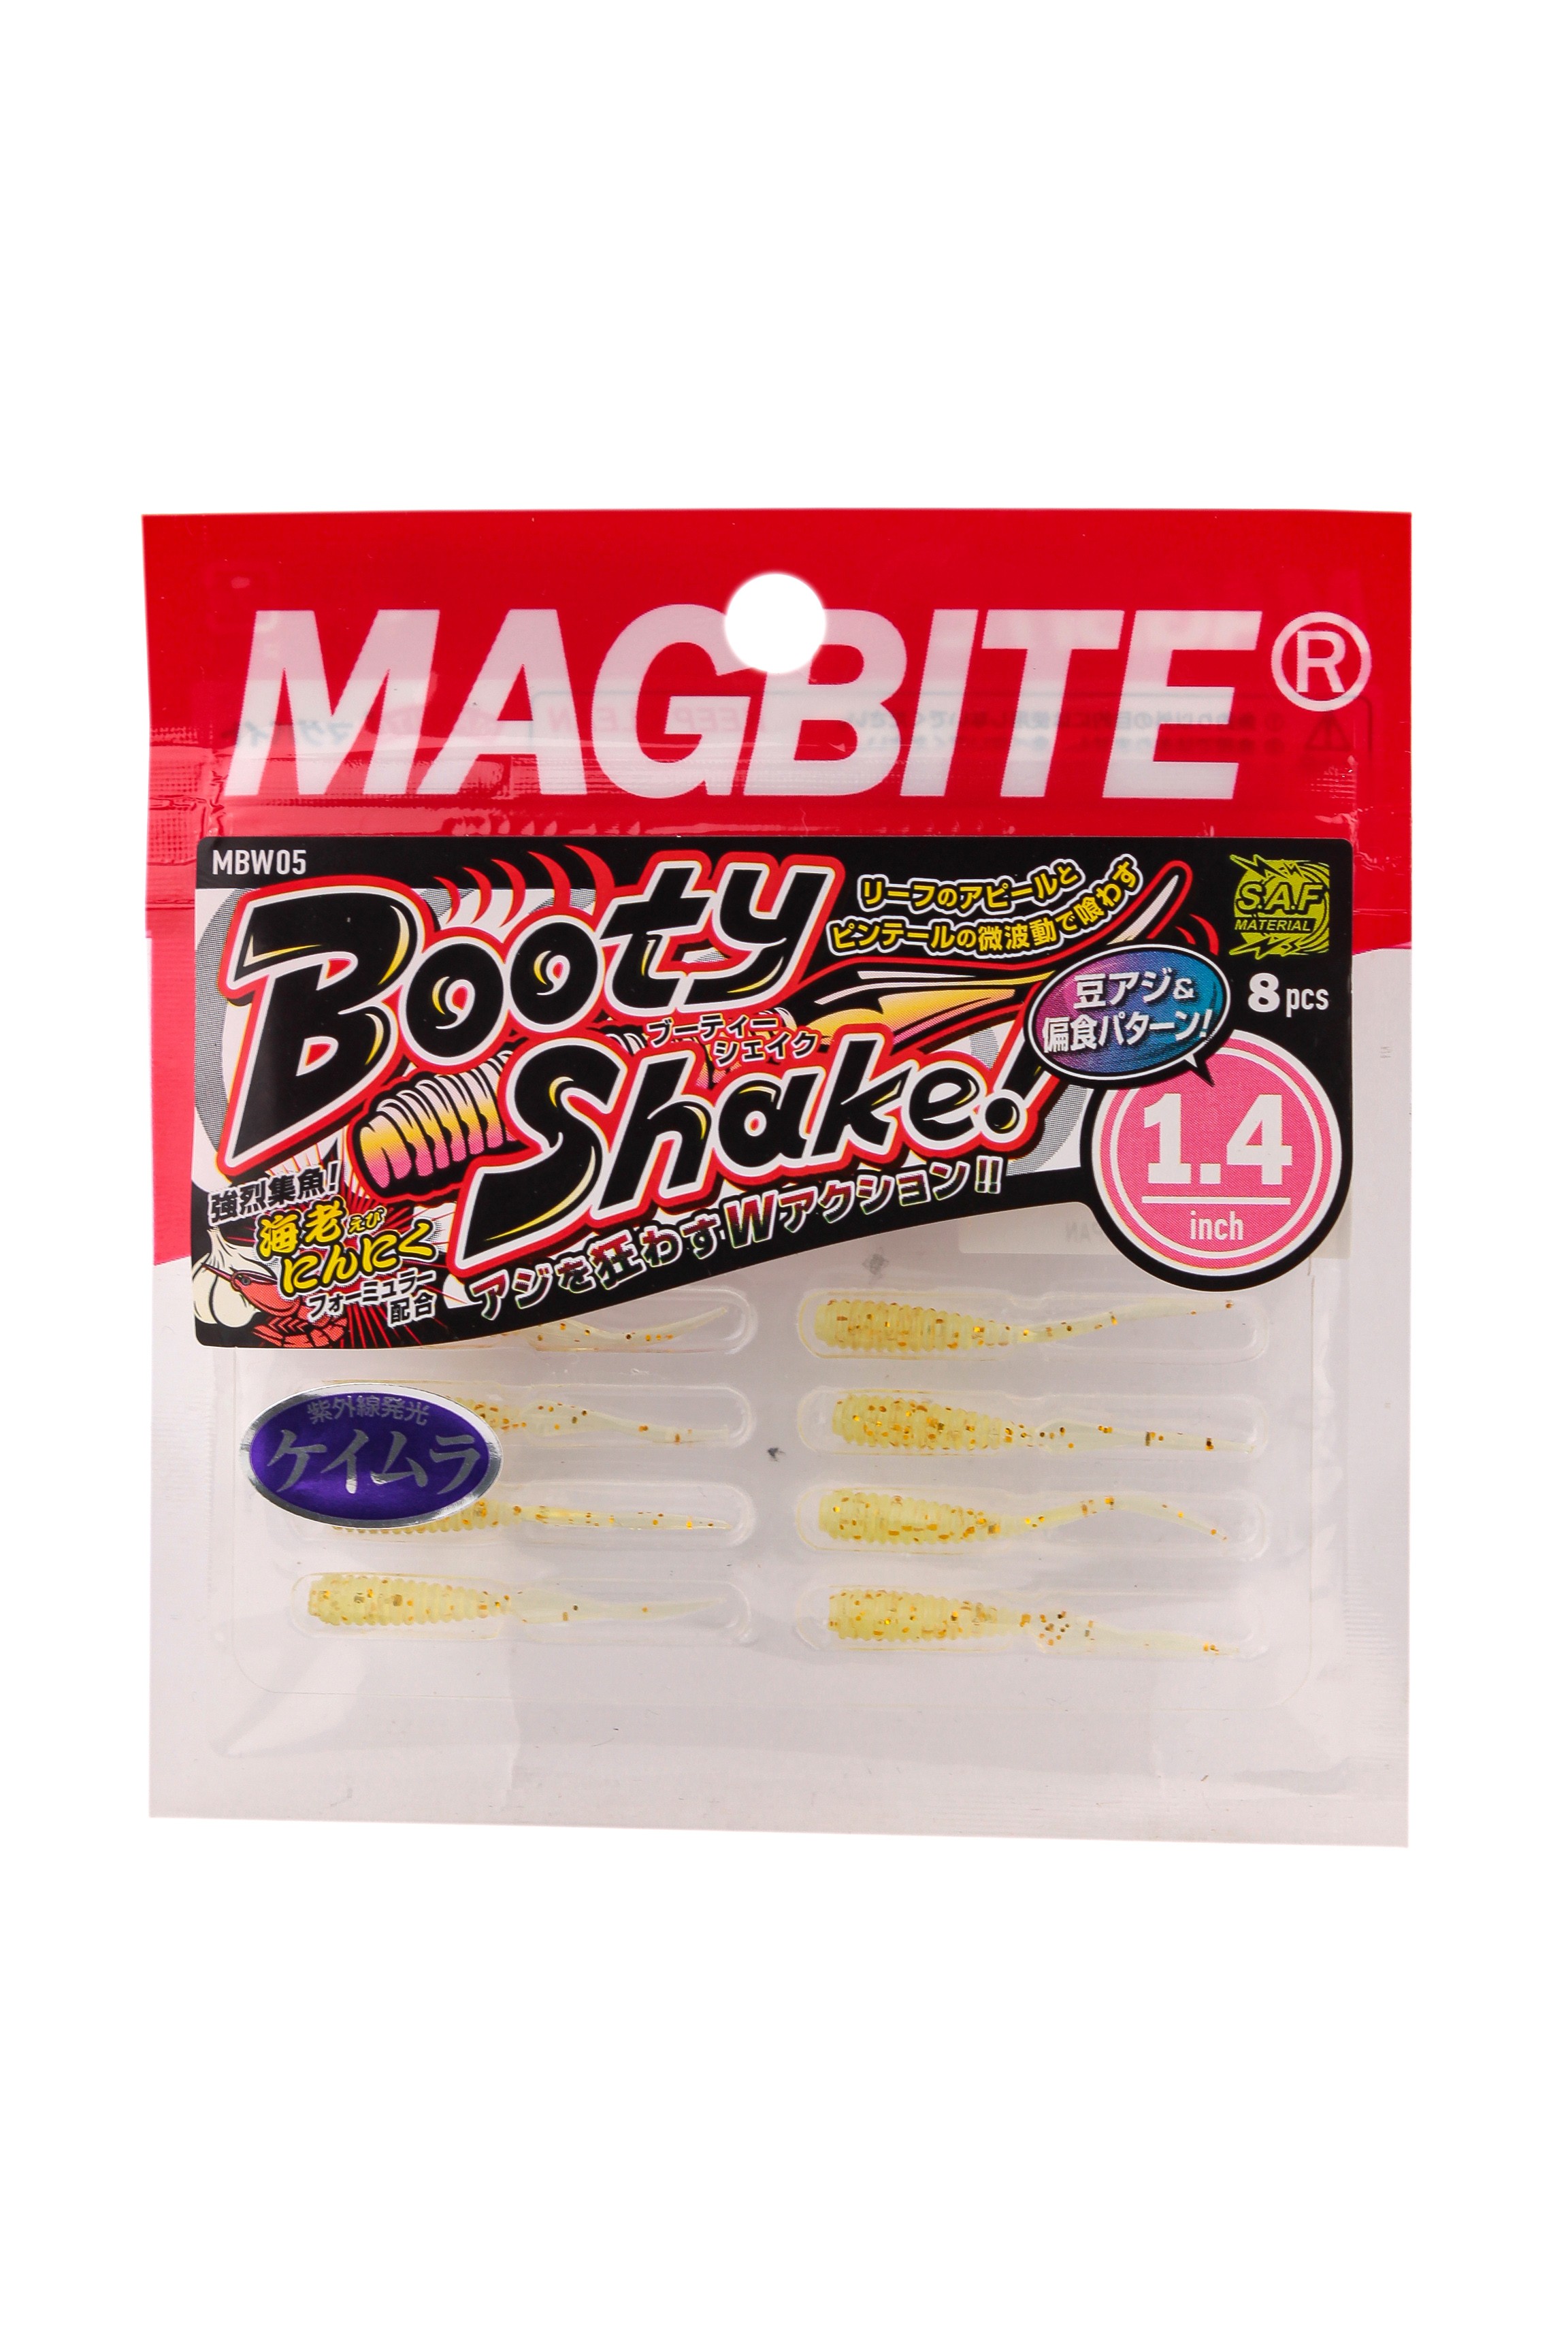 Приманка Magbite MBW05 Booty Shake 1,4" цв.05 - фото 1